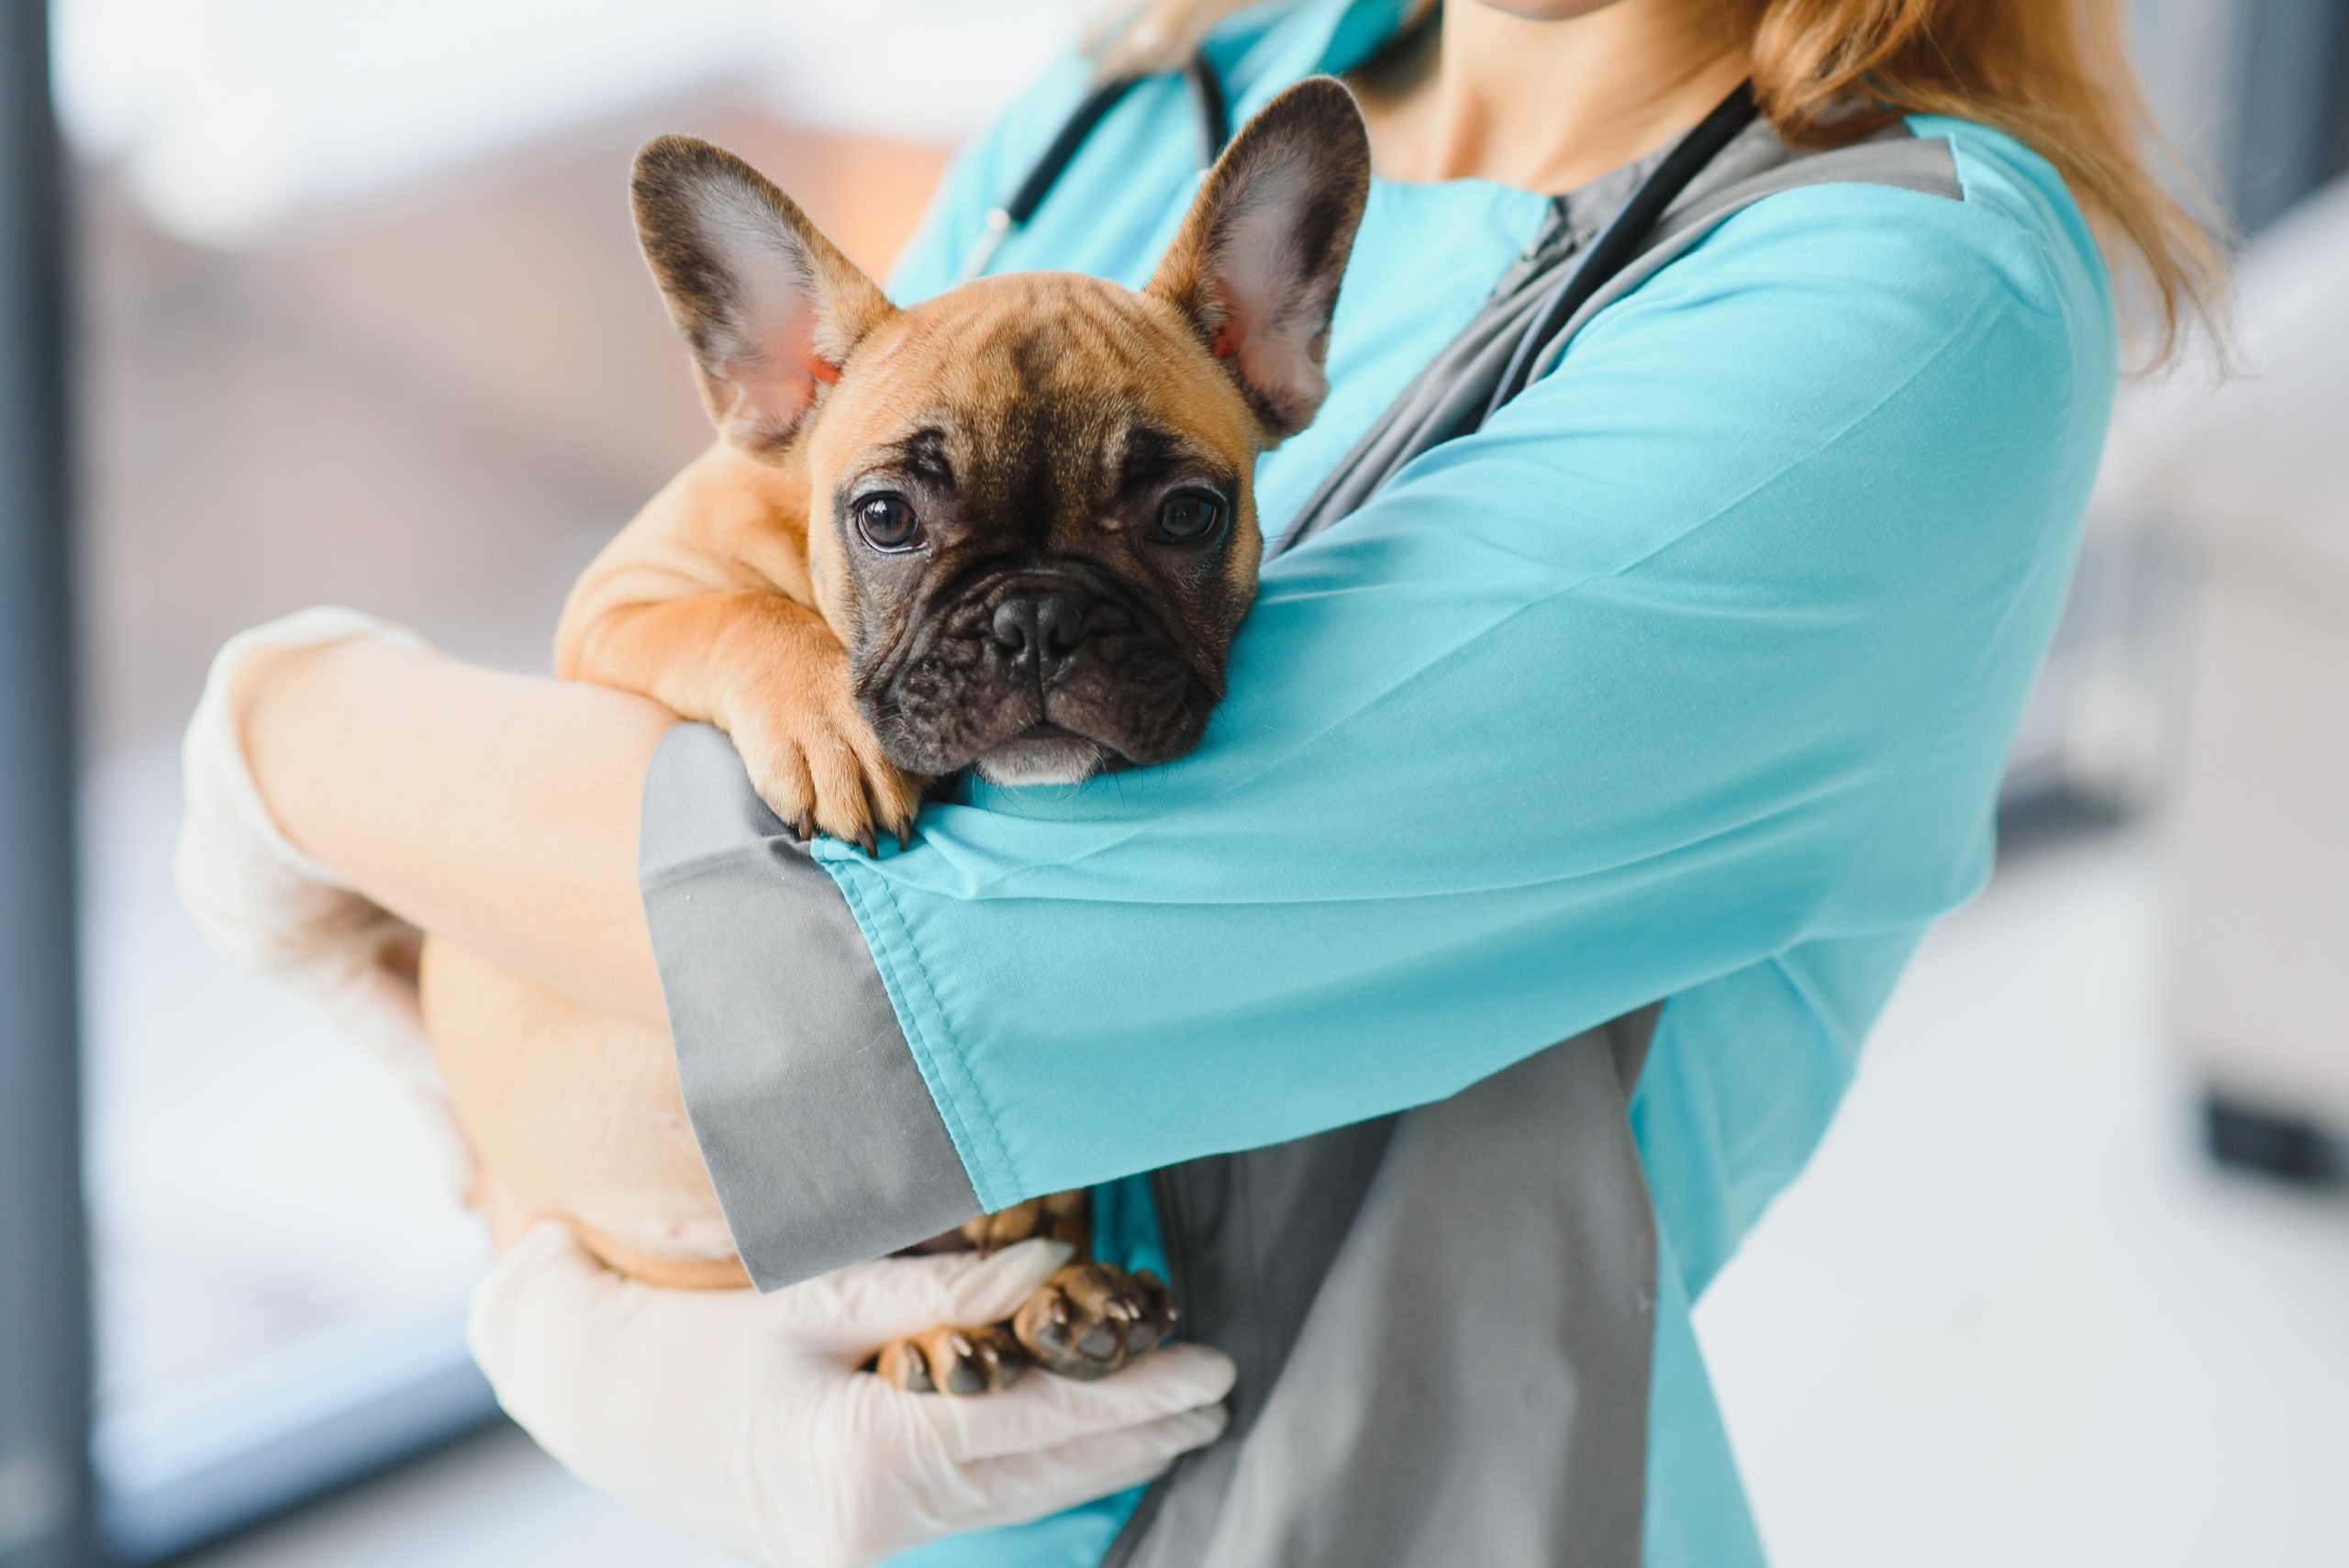 Les vétérinaires sous statut d’indépendant de l’AFSCA bénéficieront d’une revalorisation salariale à partir du 1er avril 2022